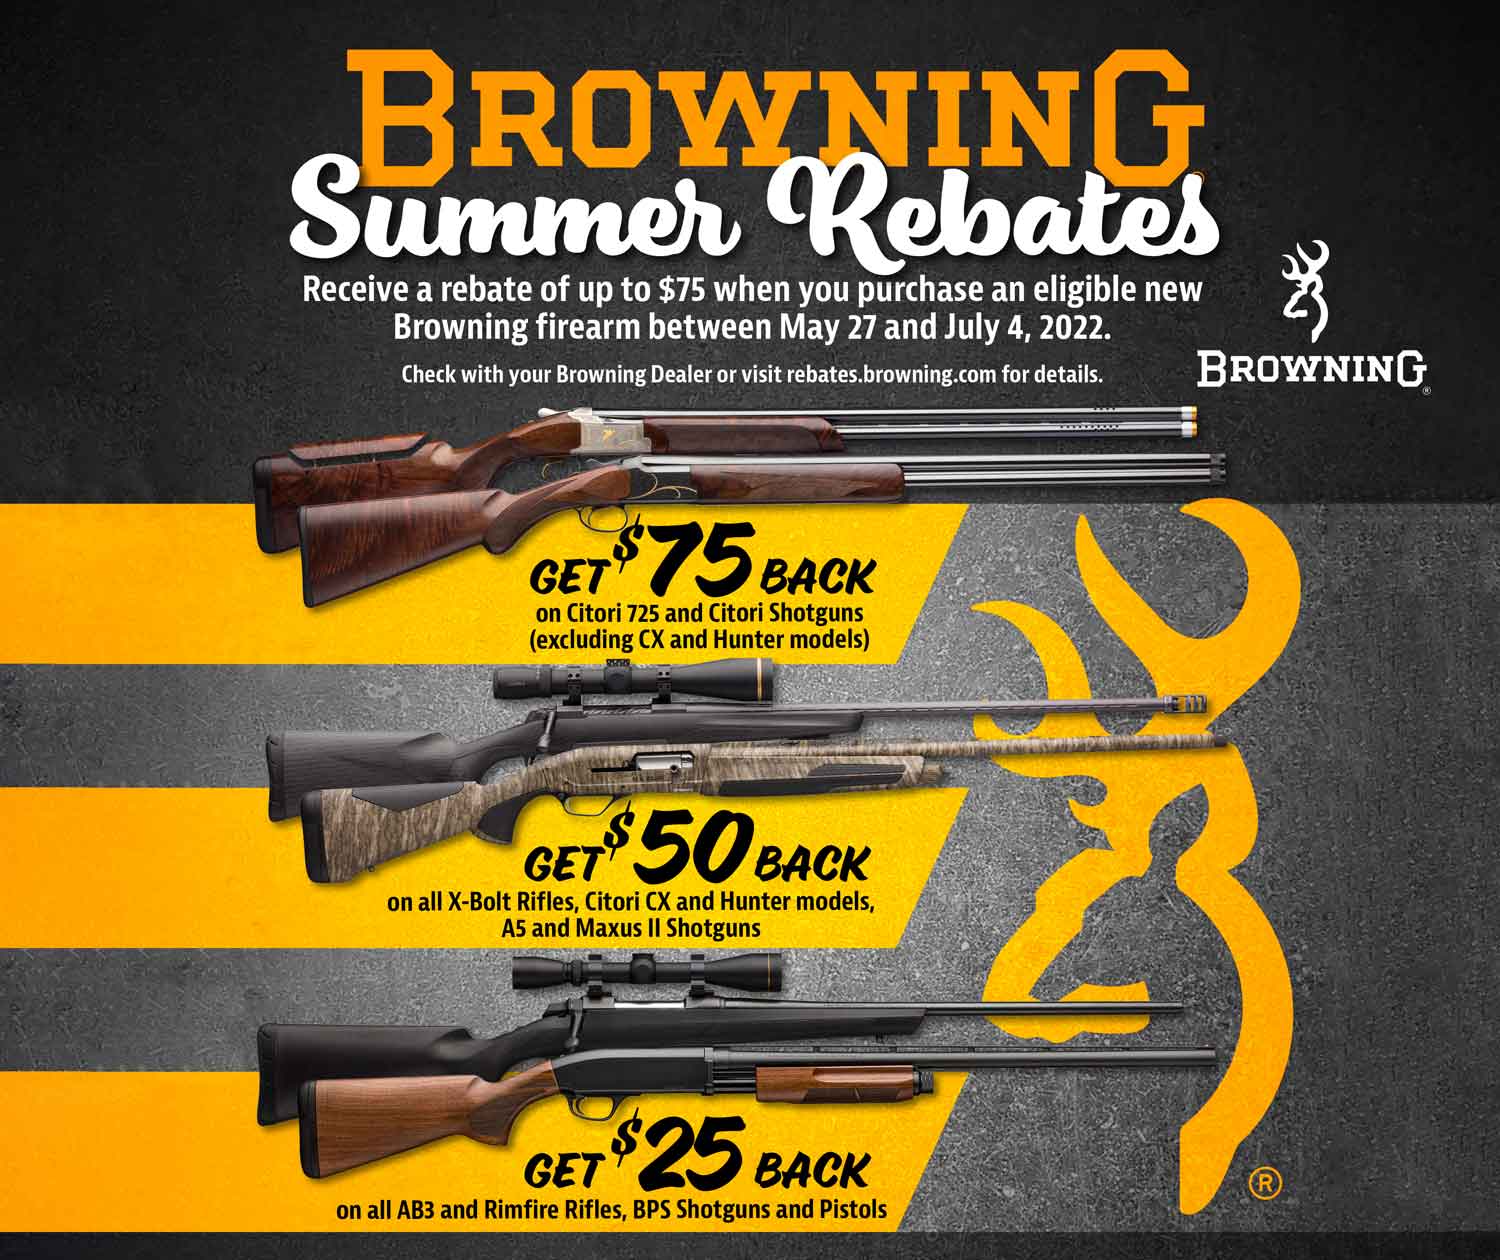 Browning Summer Rebates